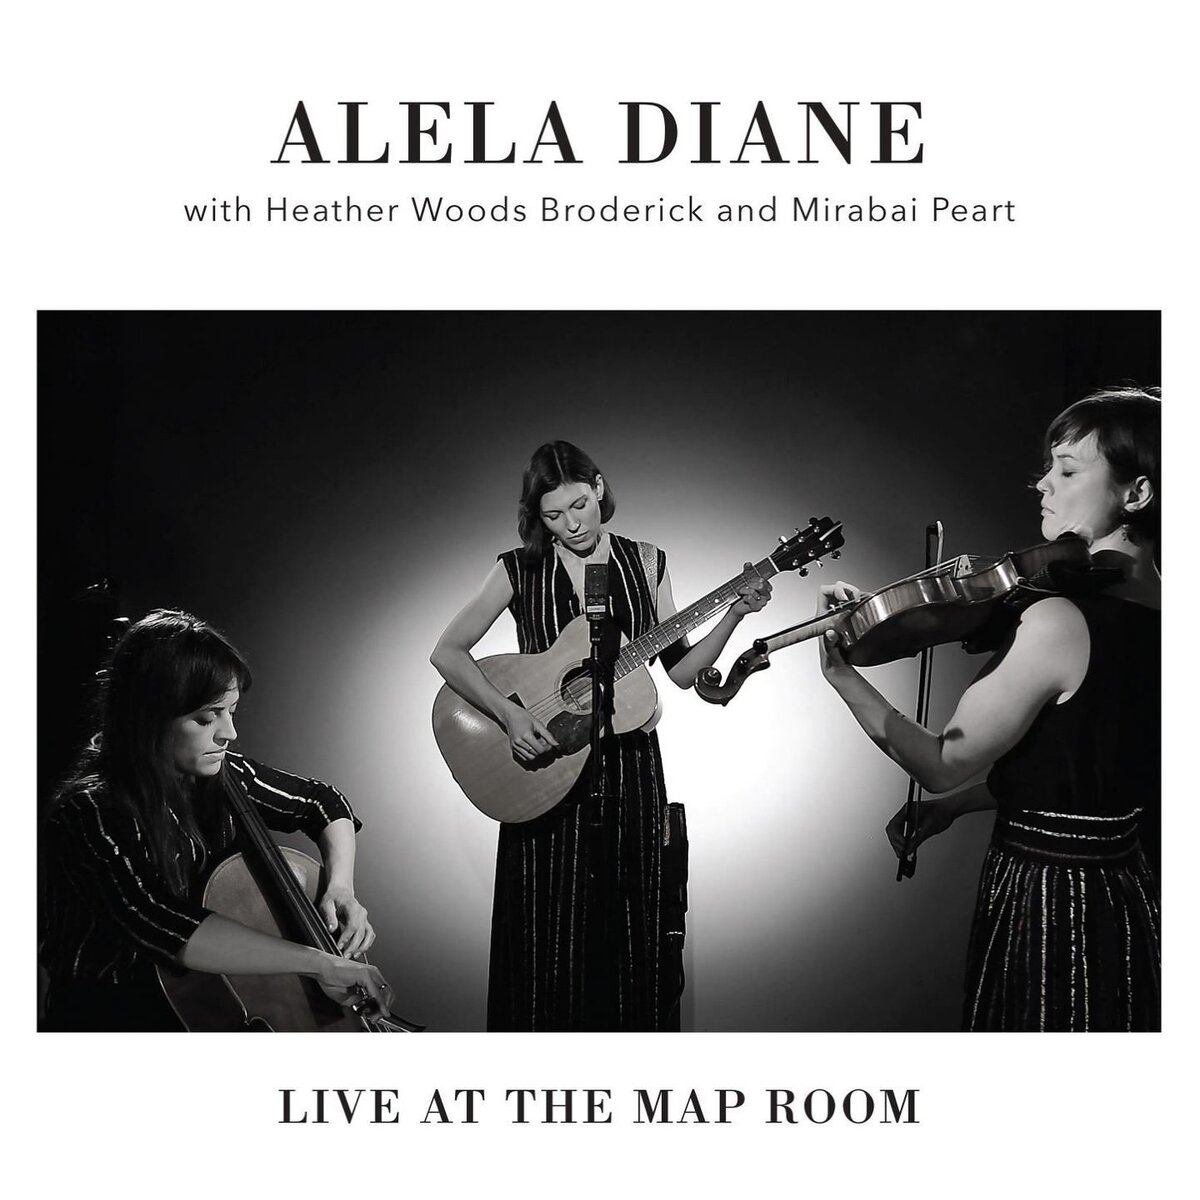 Alela Diane, USA, Folk, Acoustic Folk, Indie Folk